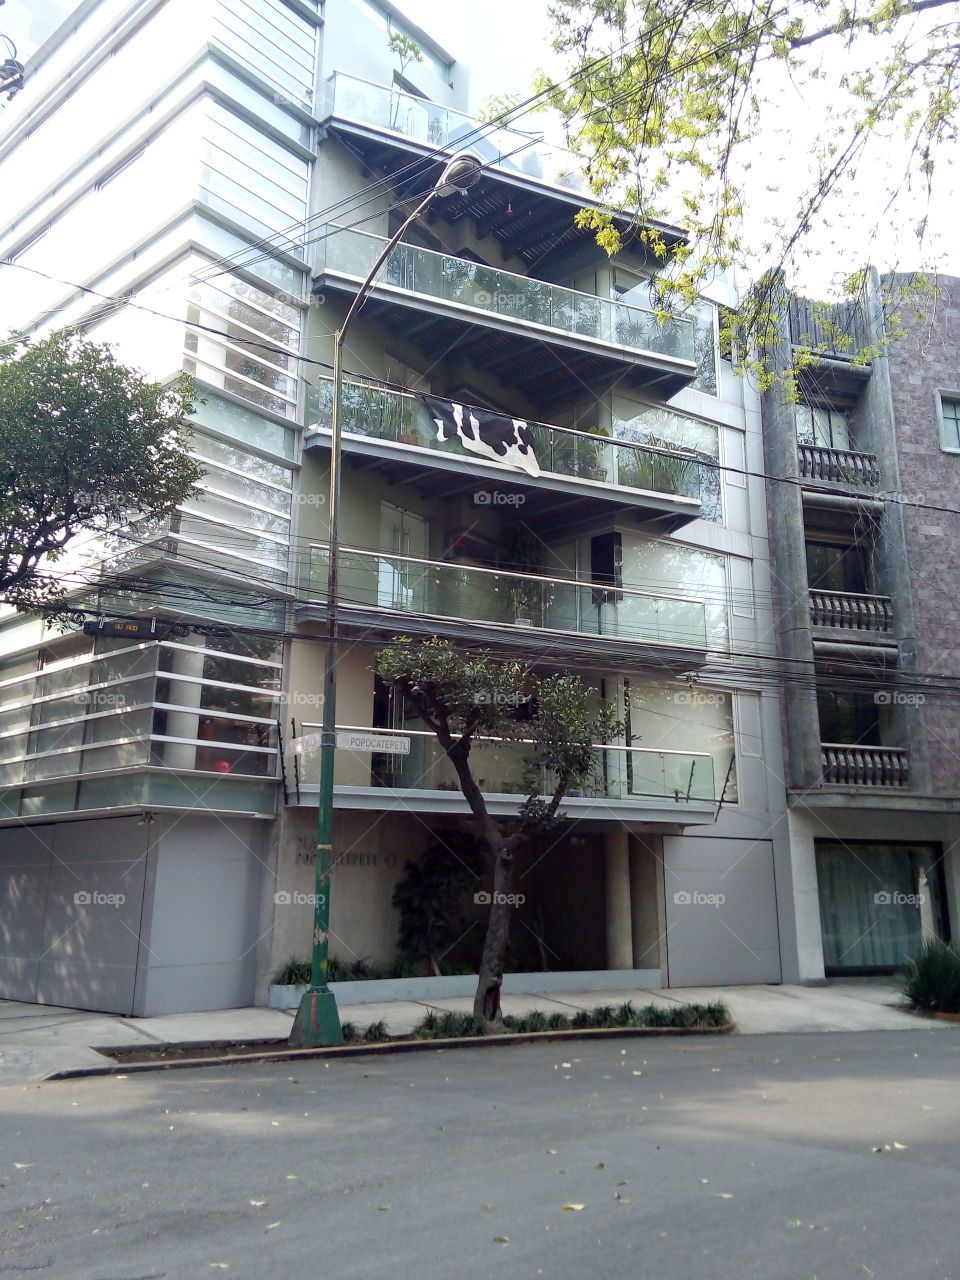 Edificio tipo moderno en la ciudad, balcón de cristal, árbol enfrente